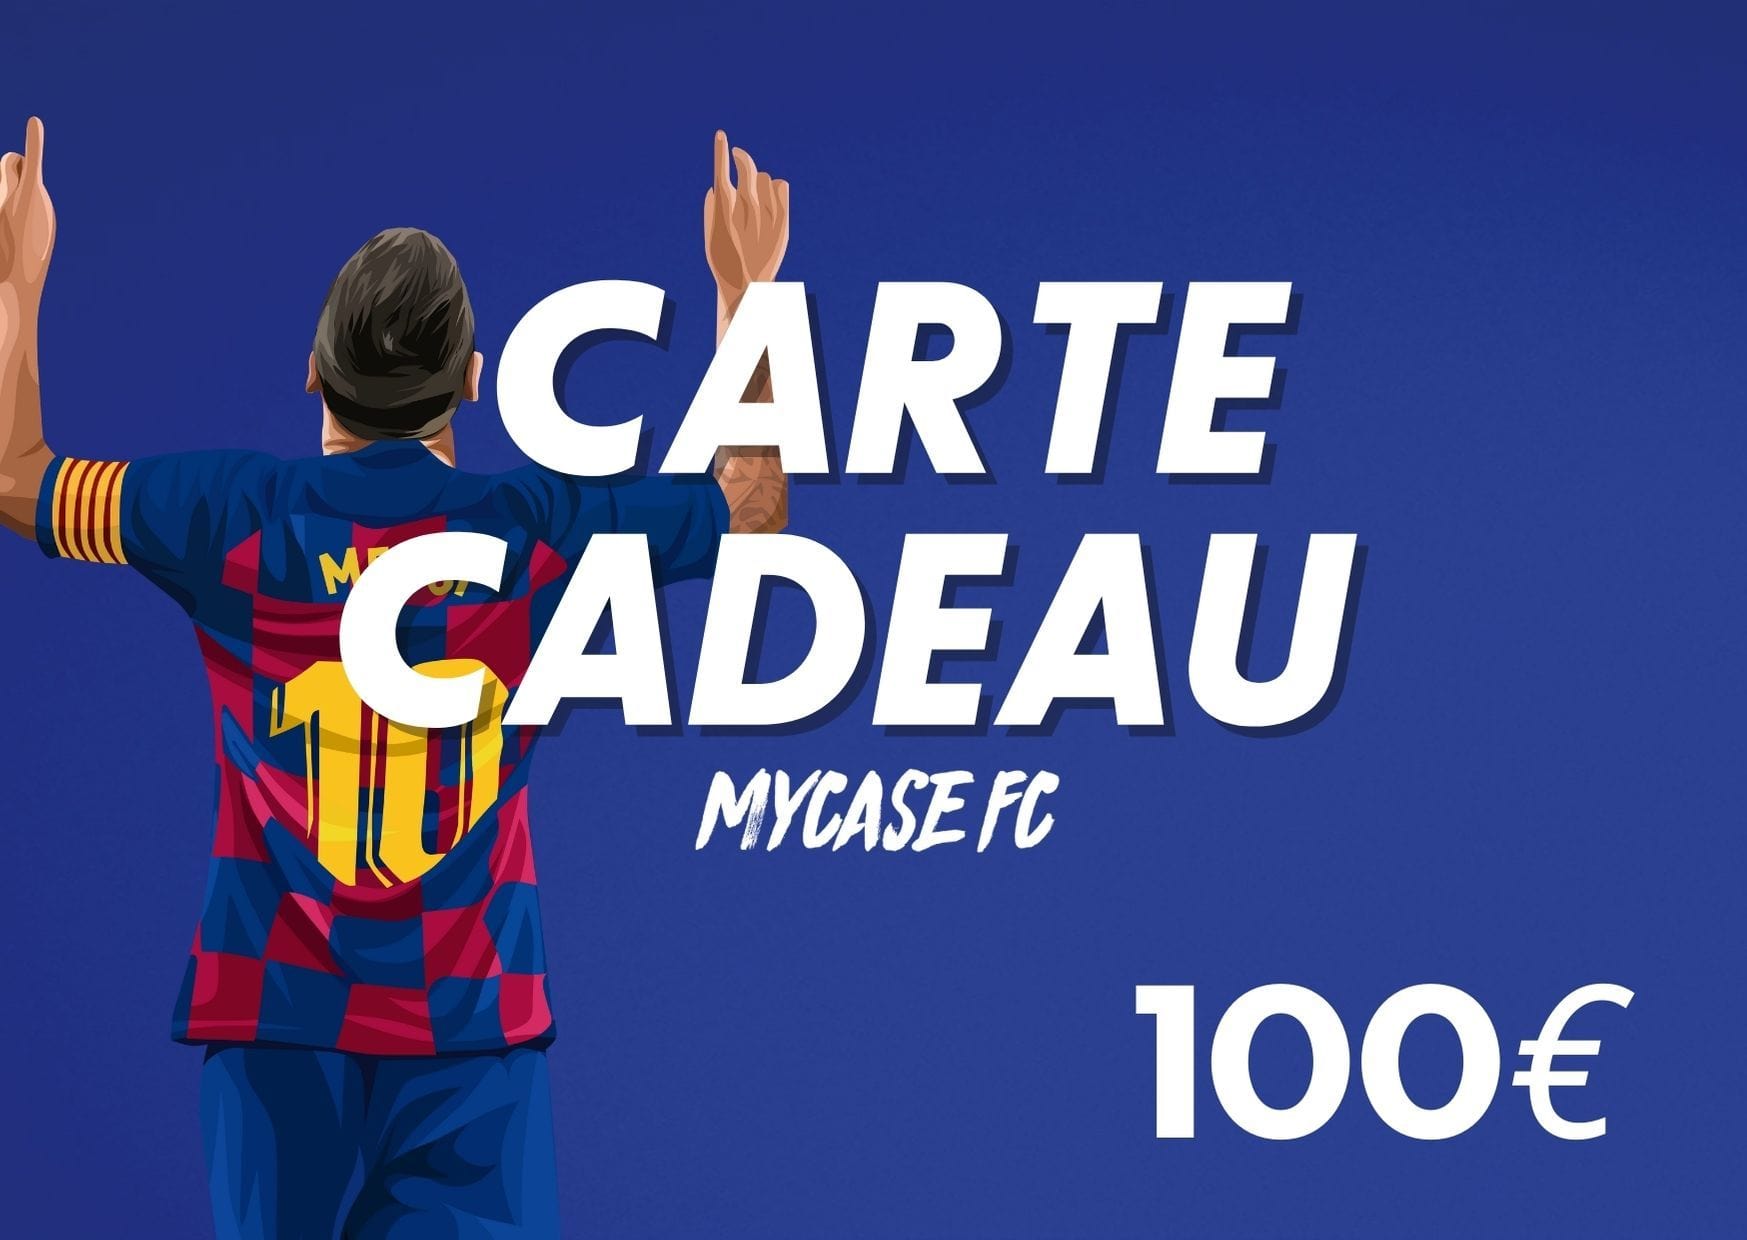 CARTE CADEAU 100€ - MYCASE FC